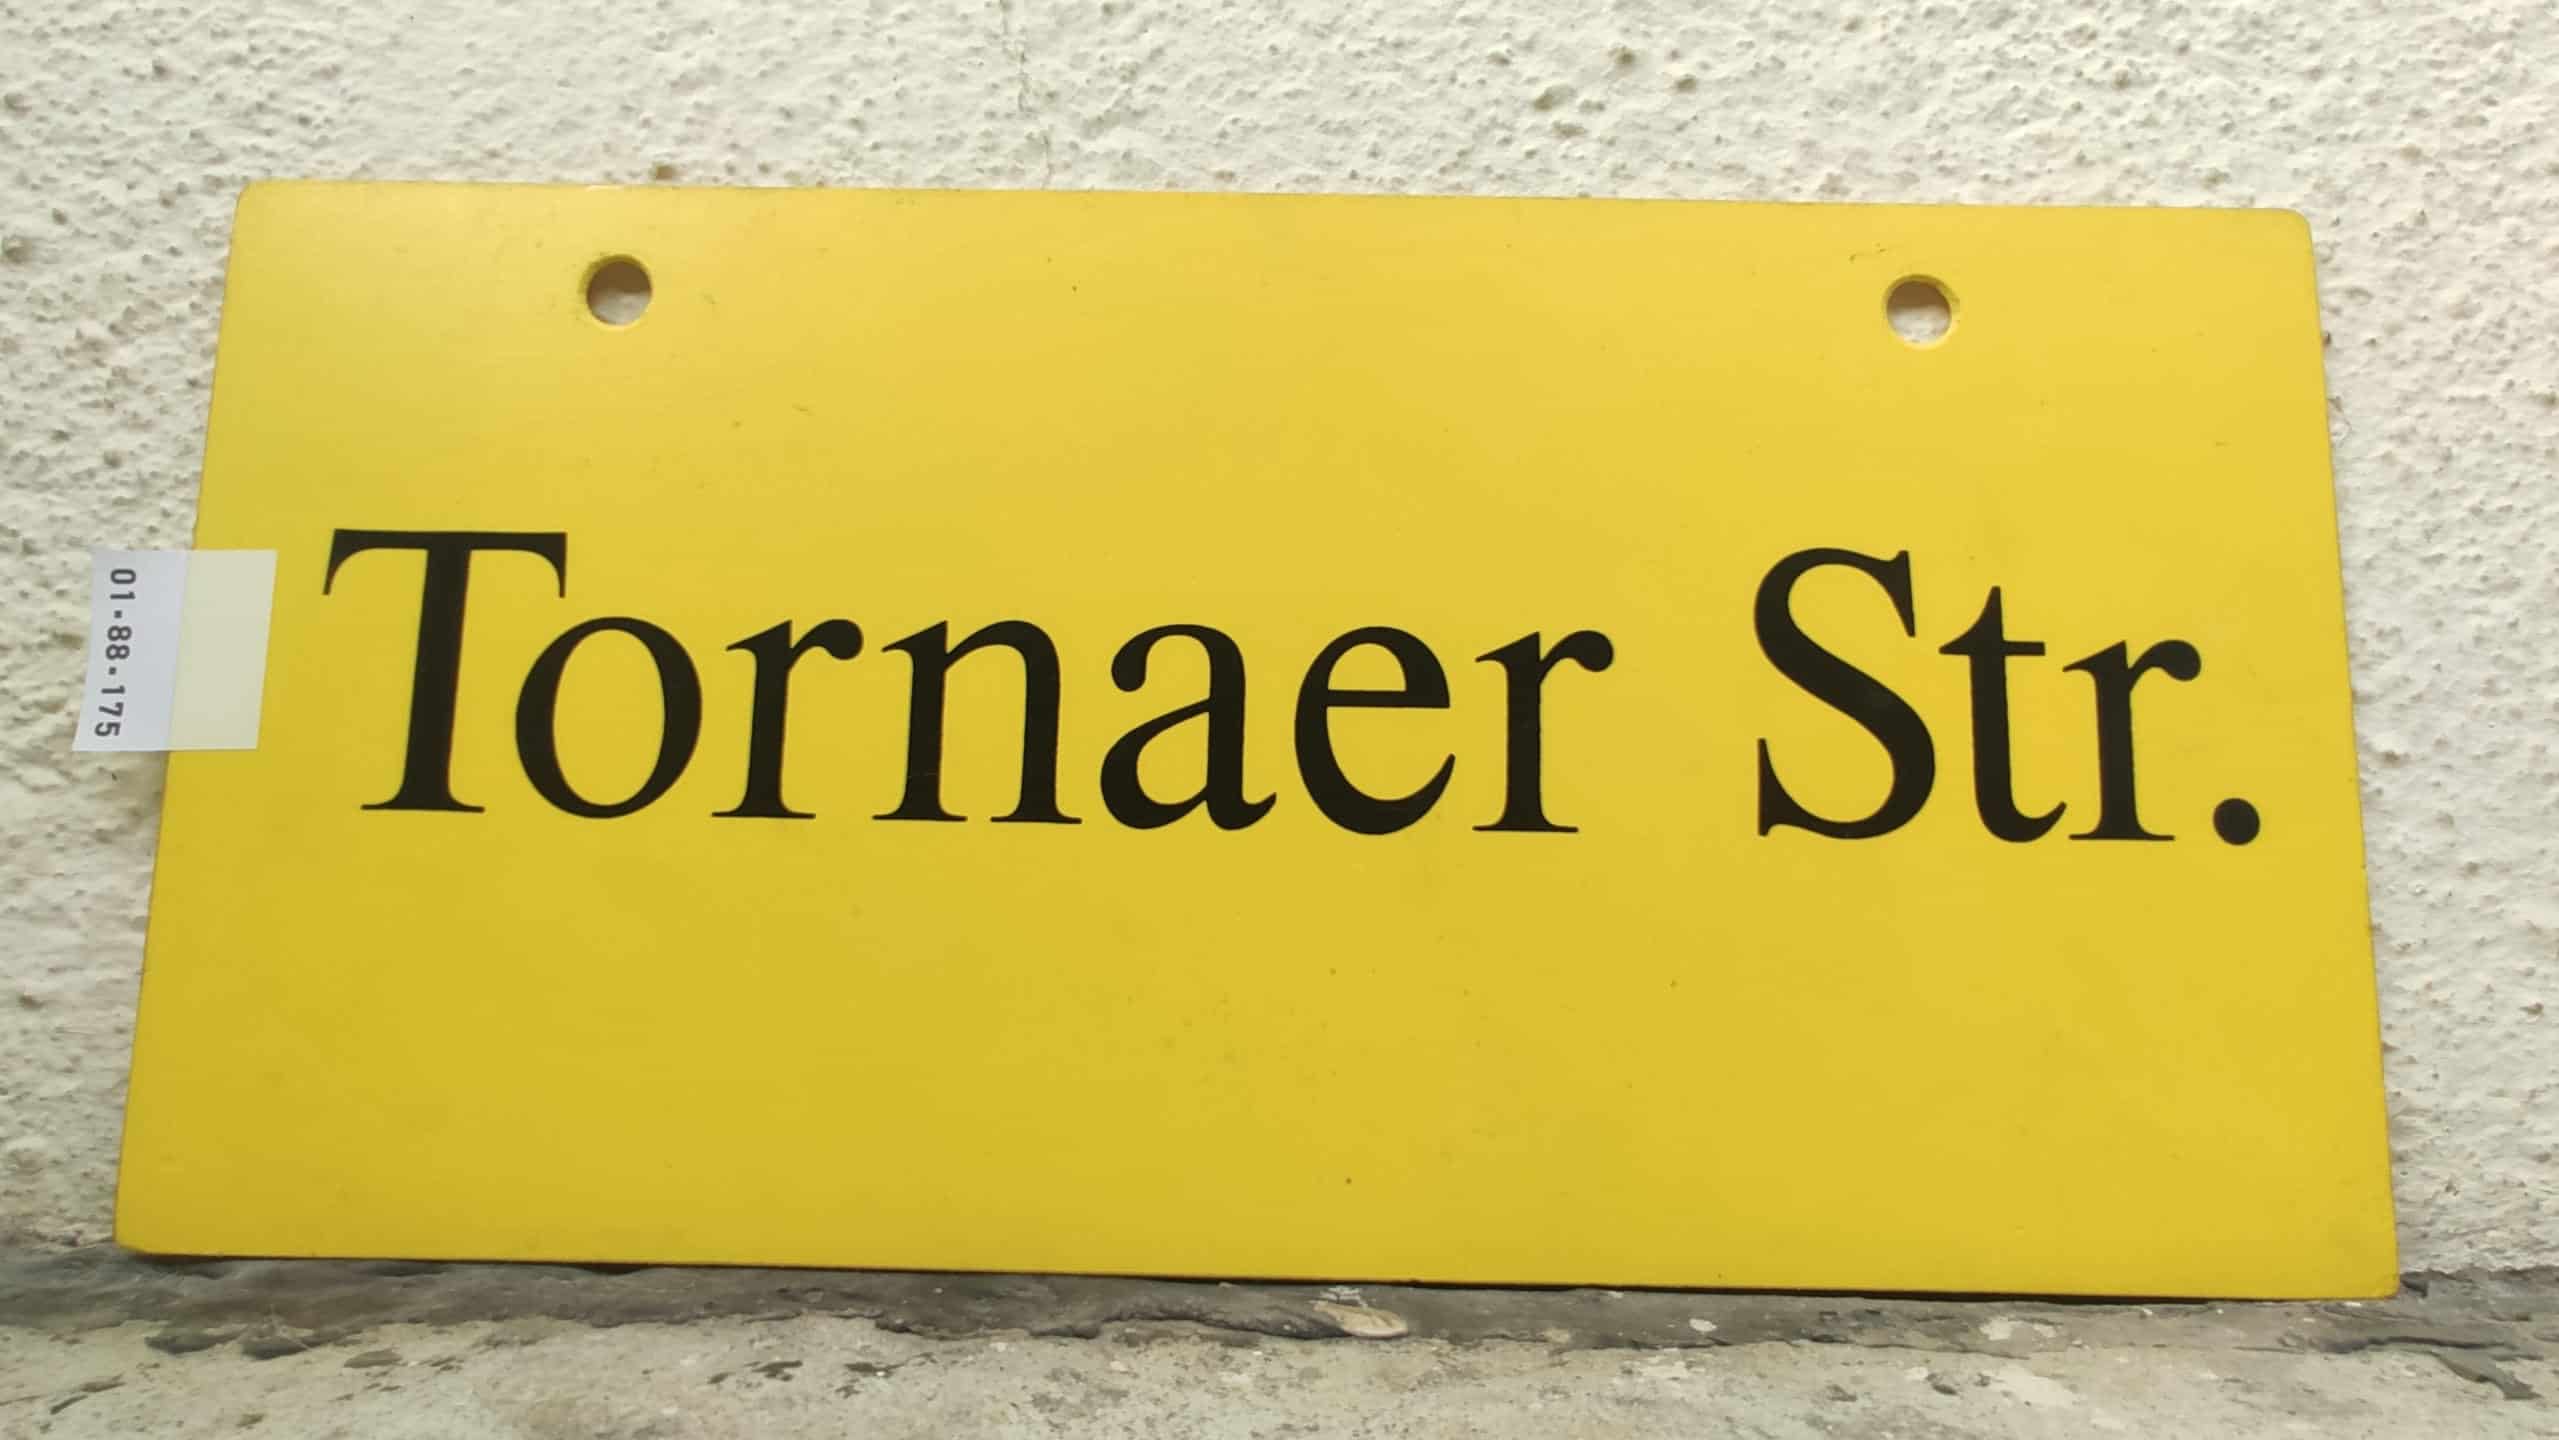 Tornaer Str.